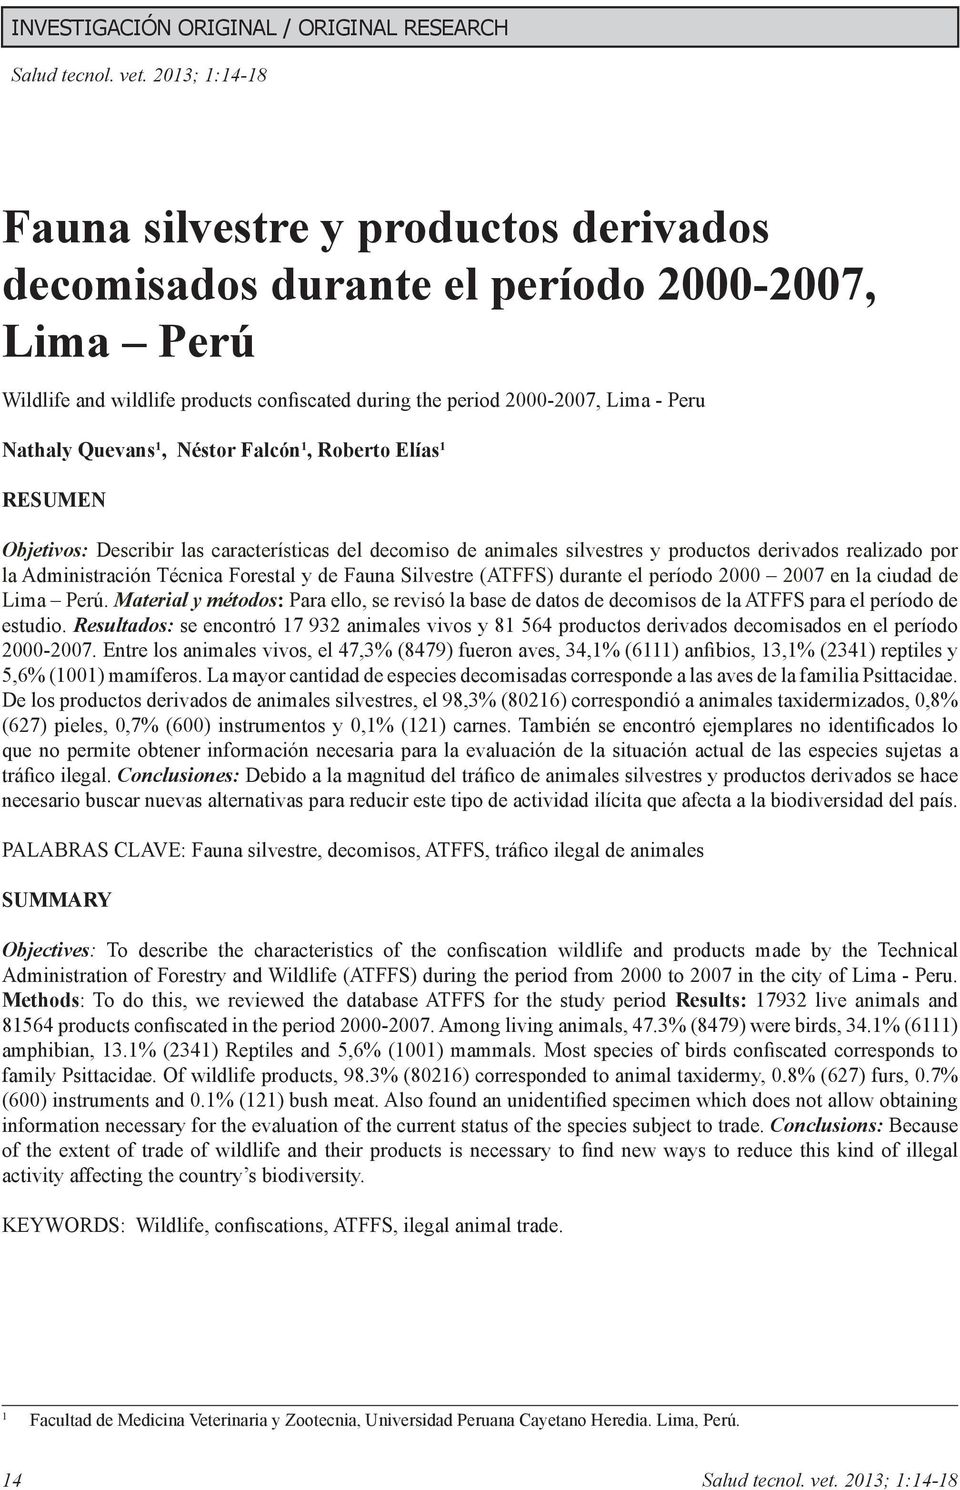 Silvestre (ATFFS) durante el período 2000 2007 en la ciudad de Lima Perú. Material y métodos: Para ello, se revisó la base de datos de decomisos de la ATFFS para el período de estudio.